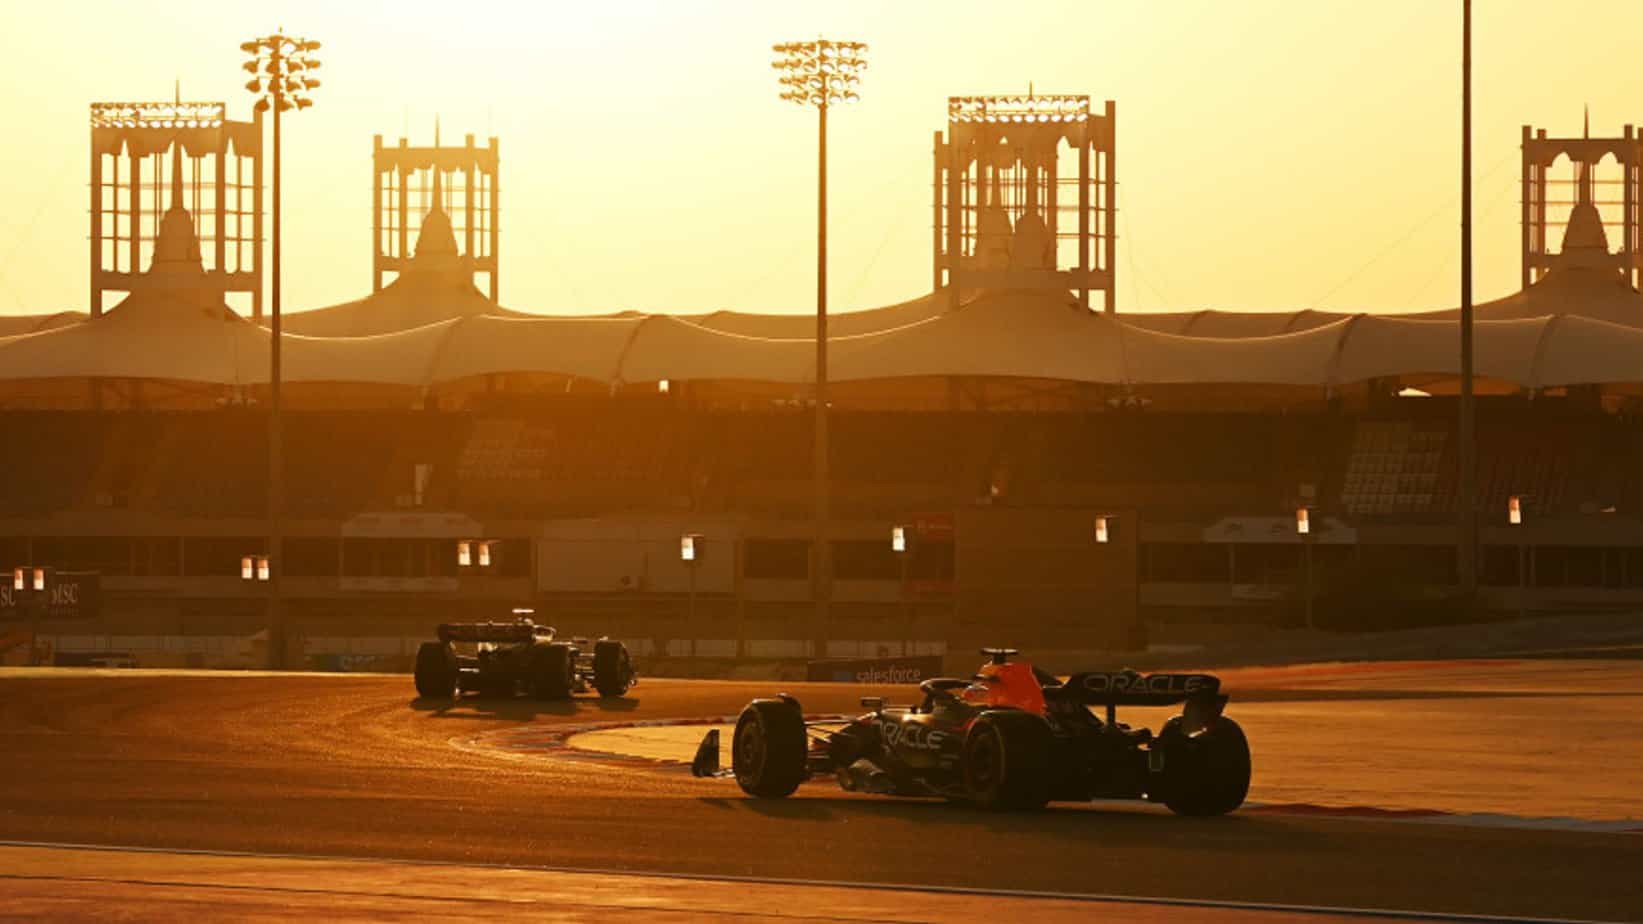 Vista previa y cuotas de apuestas del GP de Bahréin 2023